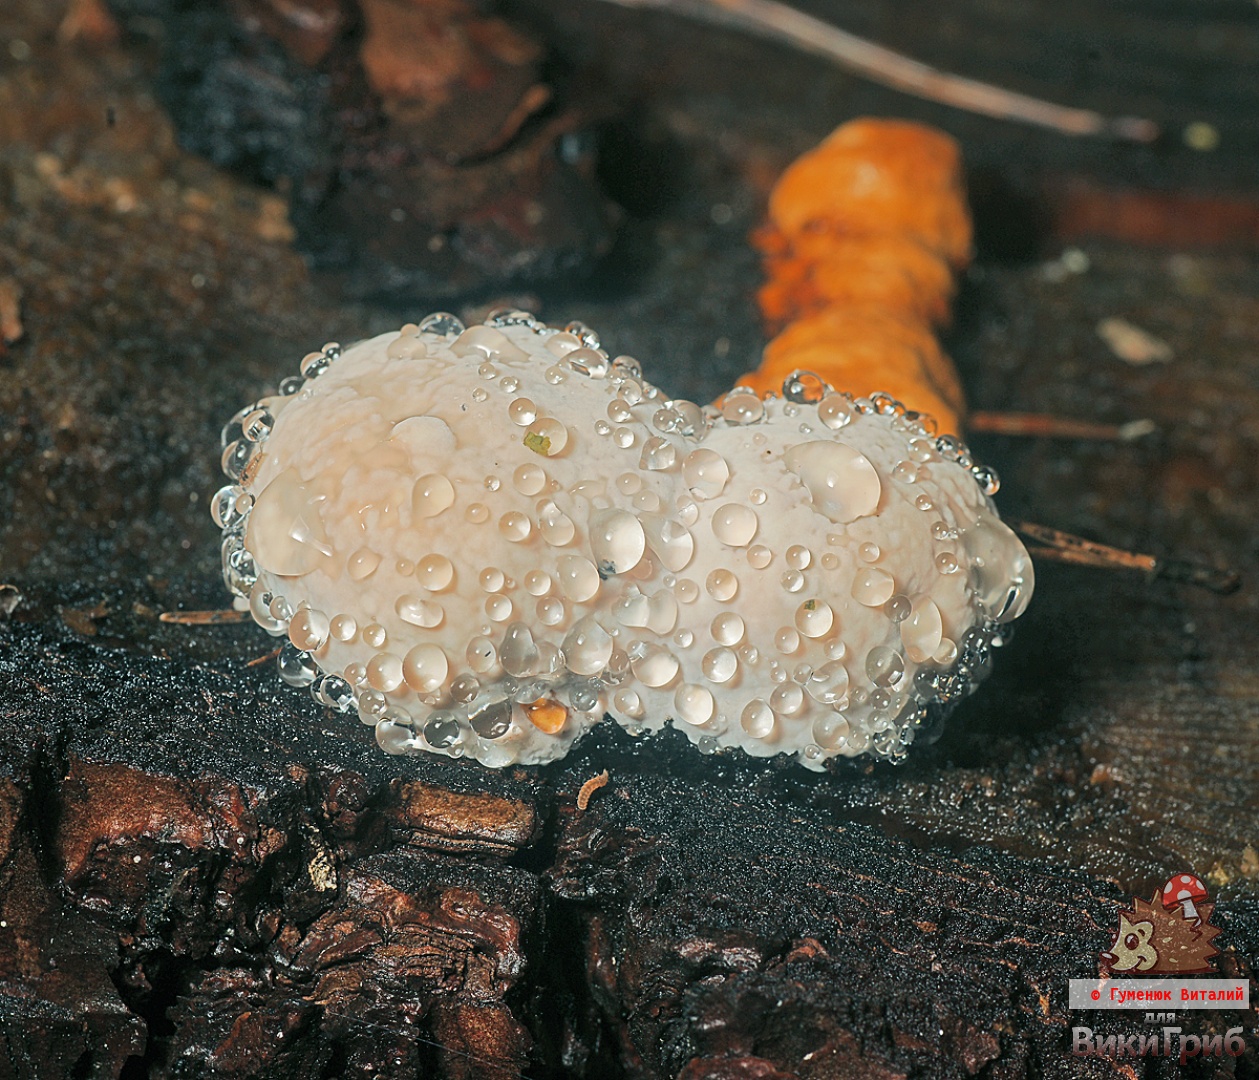 Fomitopsis pinicola - pólipo com borda